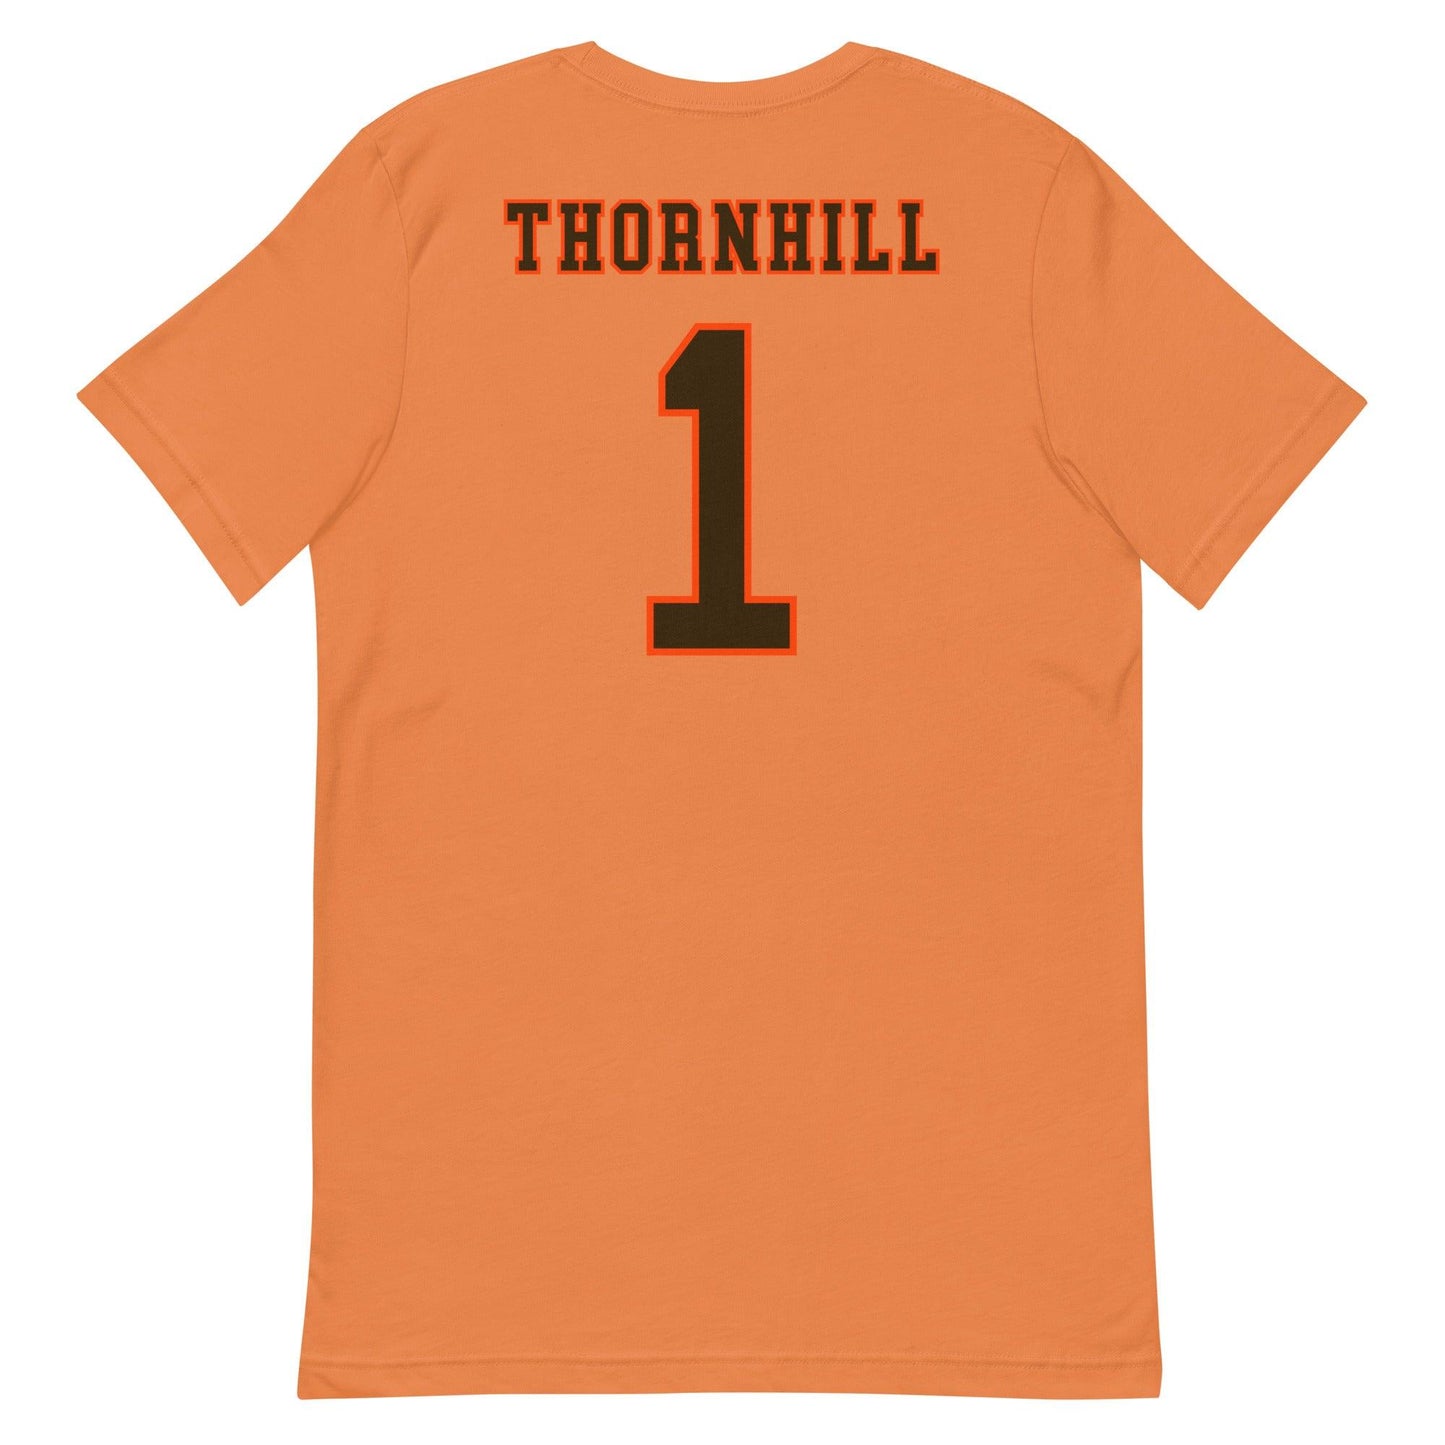 Juan Thornhill "Jersey" t-shirt - Fan Arch